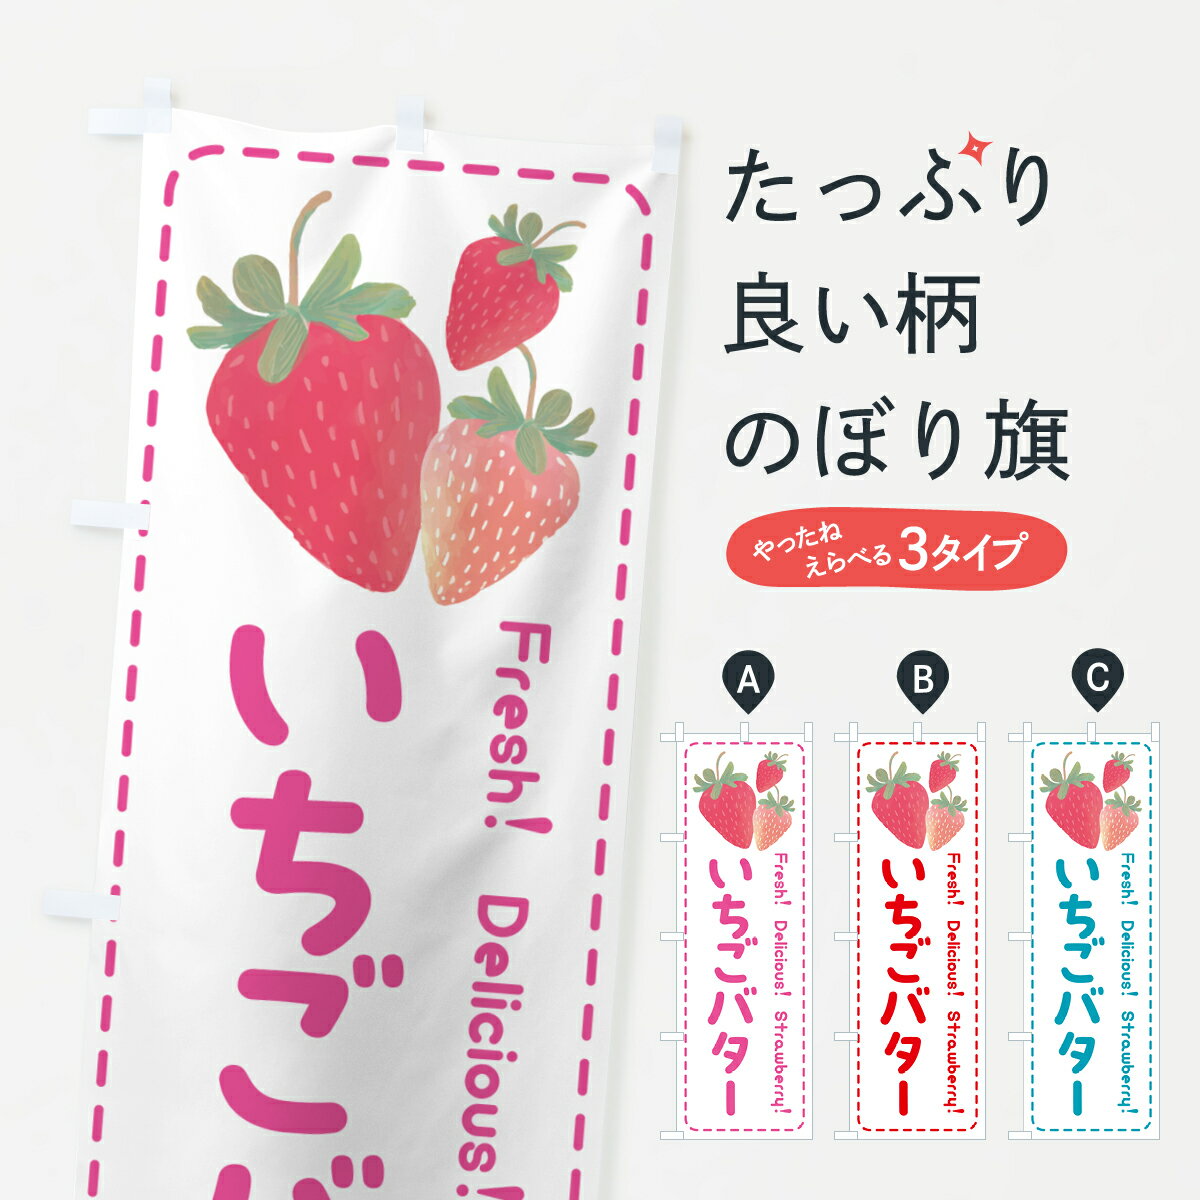 【ポスト便 送料360】 のぼり旗 いちごバター・イチゴバタ